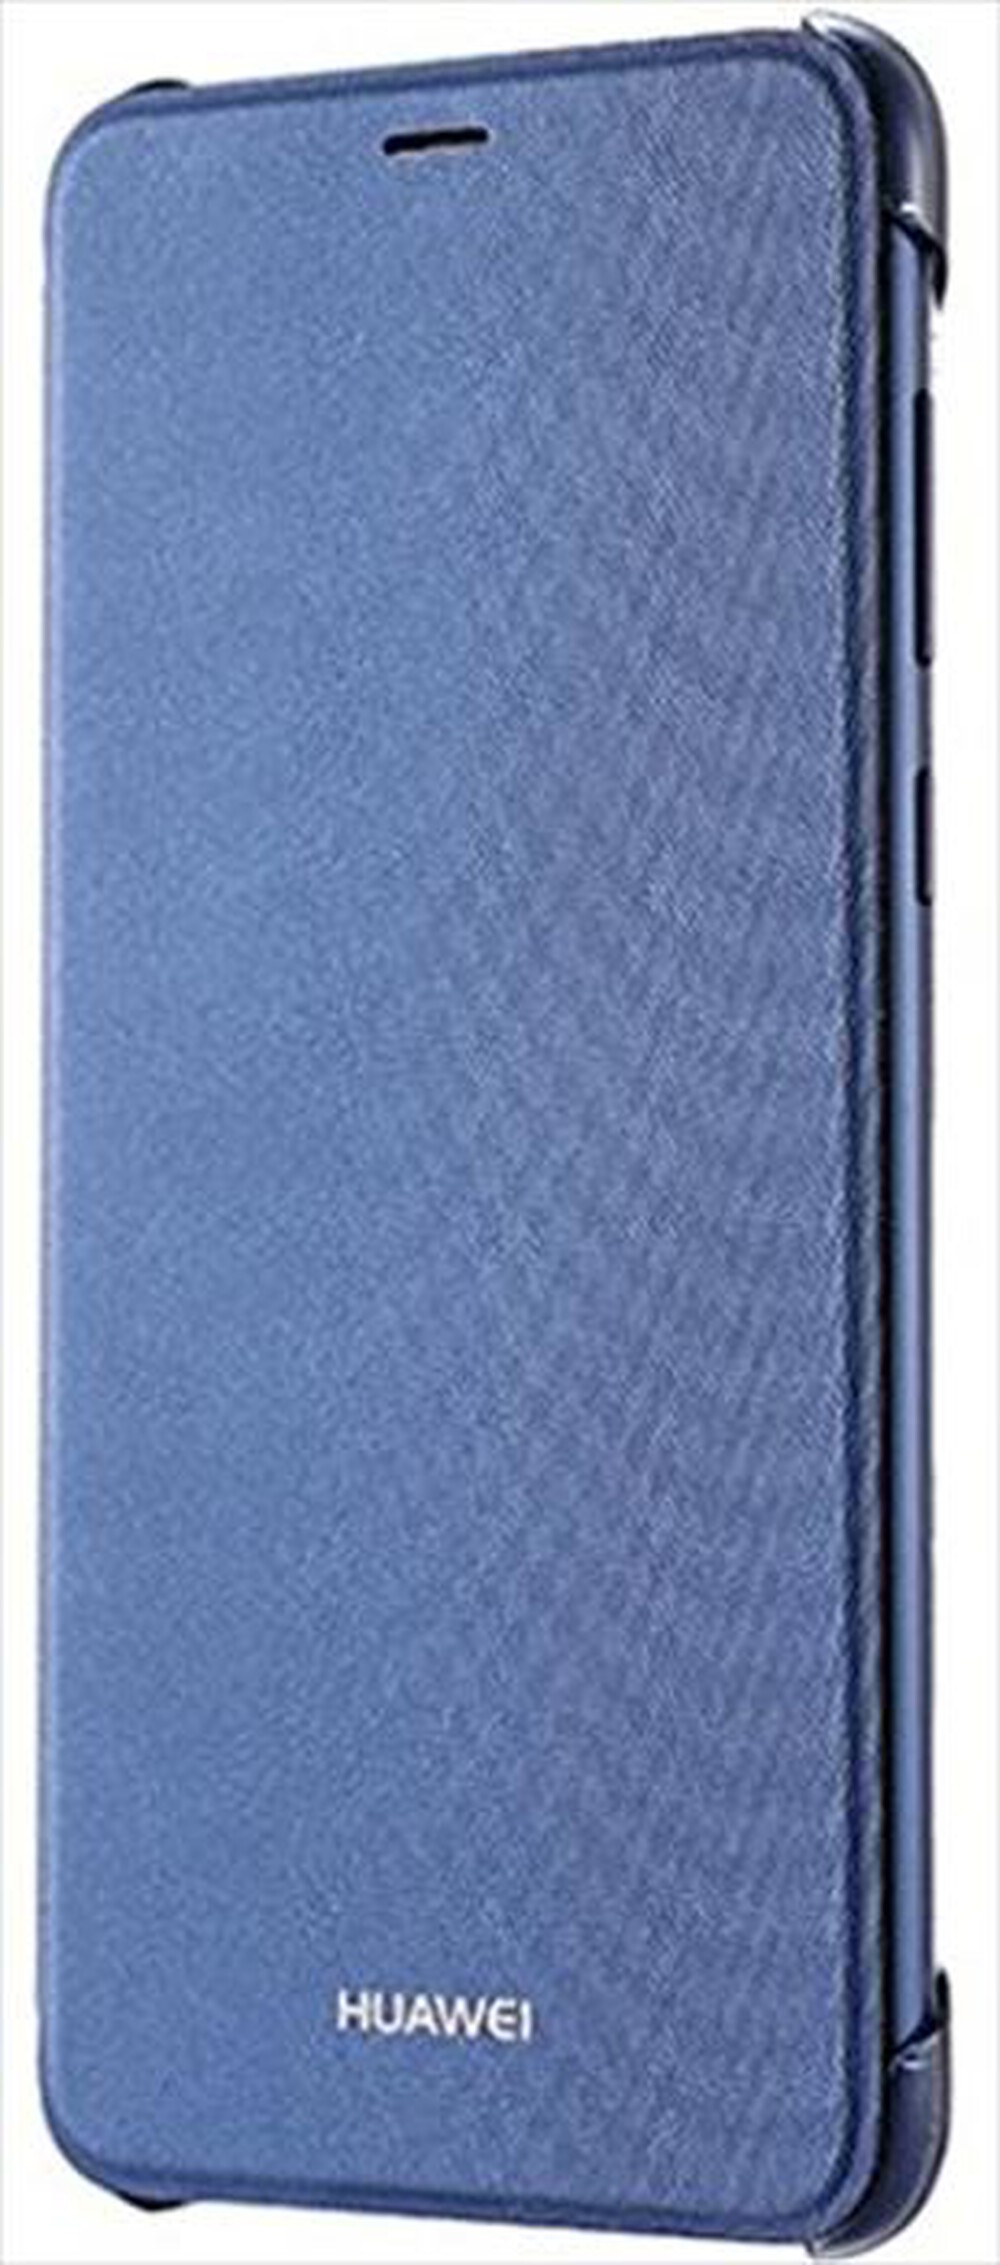 "HUAWEI - P Smart Flip Cover-Blu"